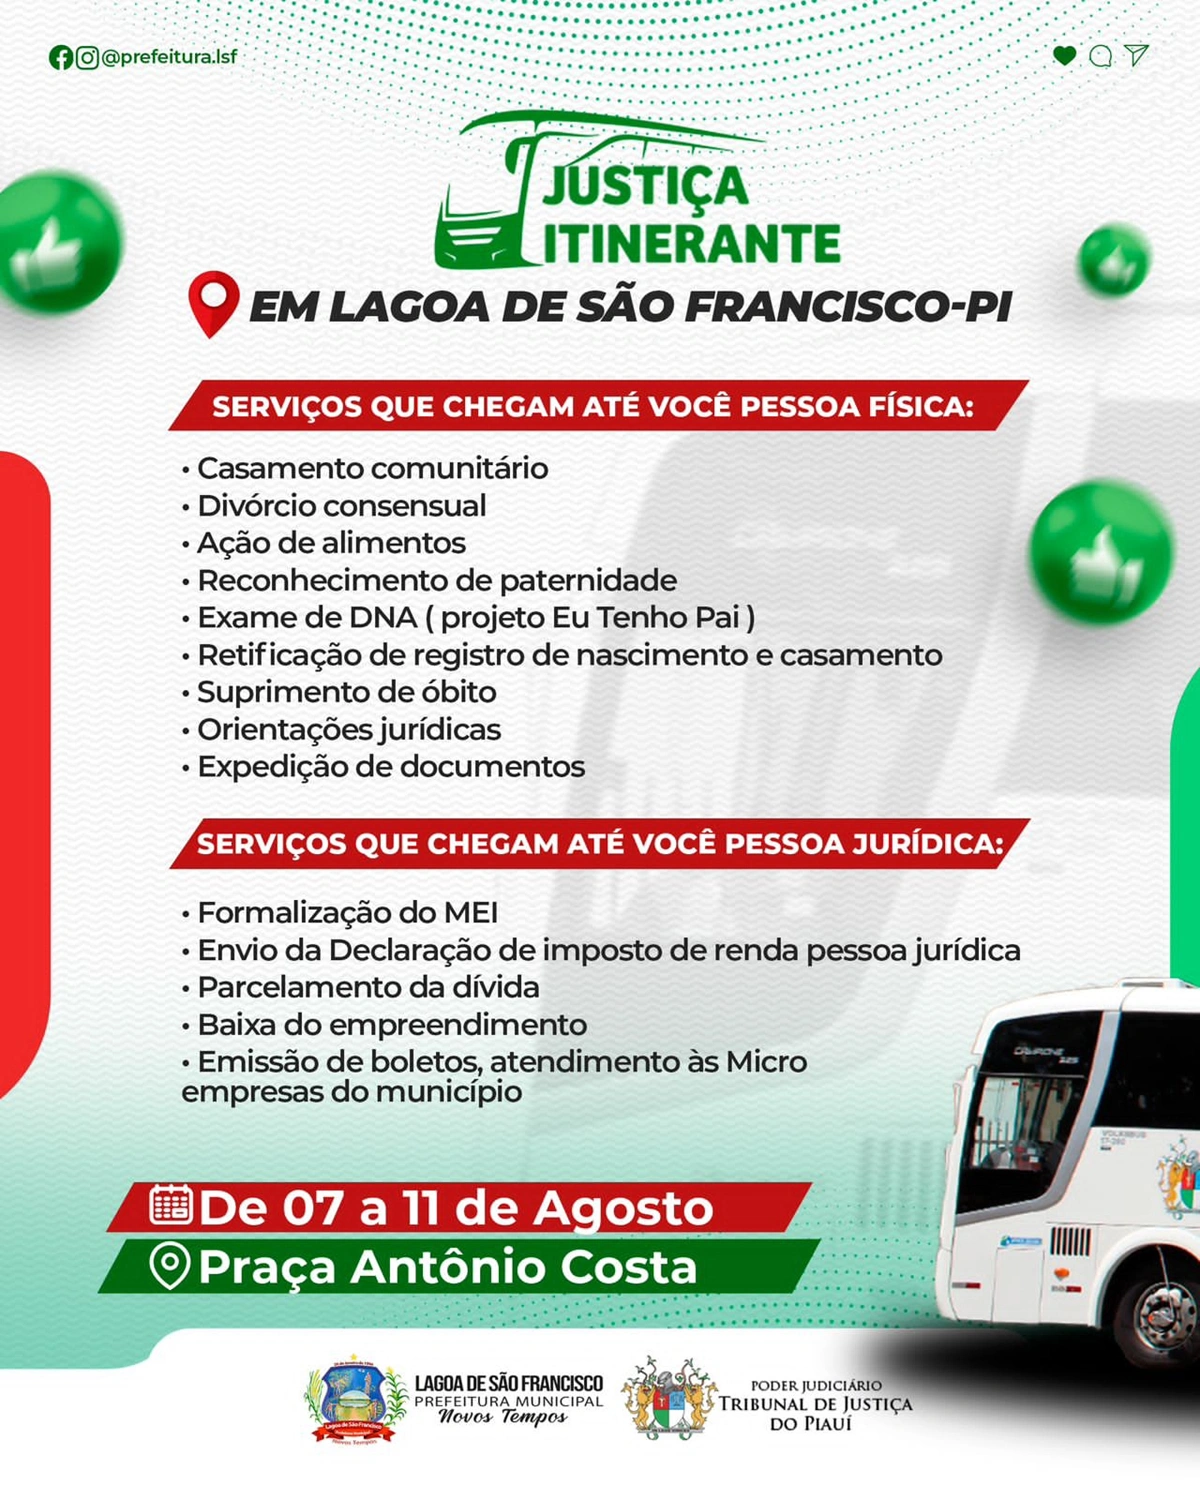 Justiça Itinerante estará em Lago de São Francisco oferecendo serviços jurídicos